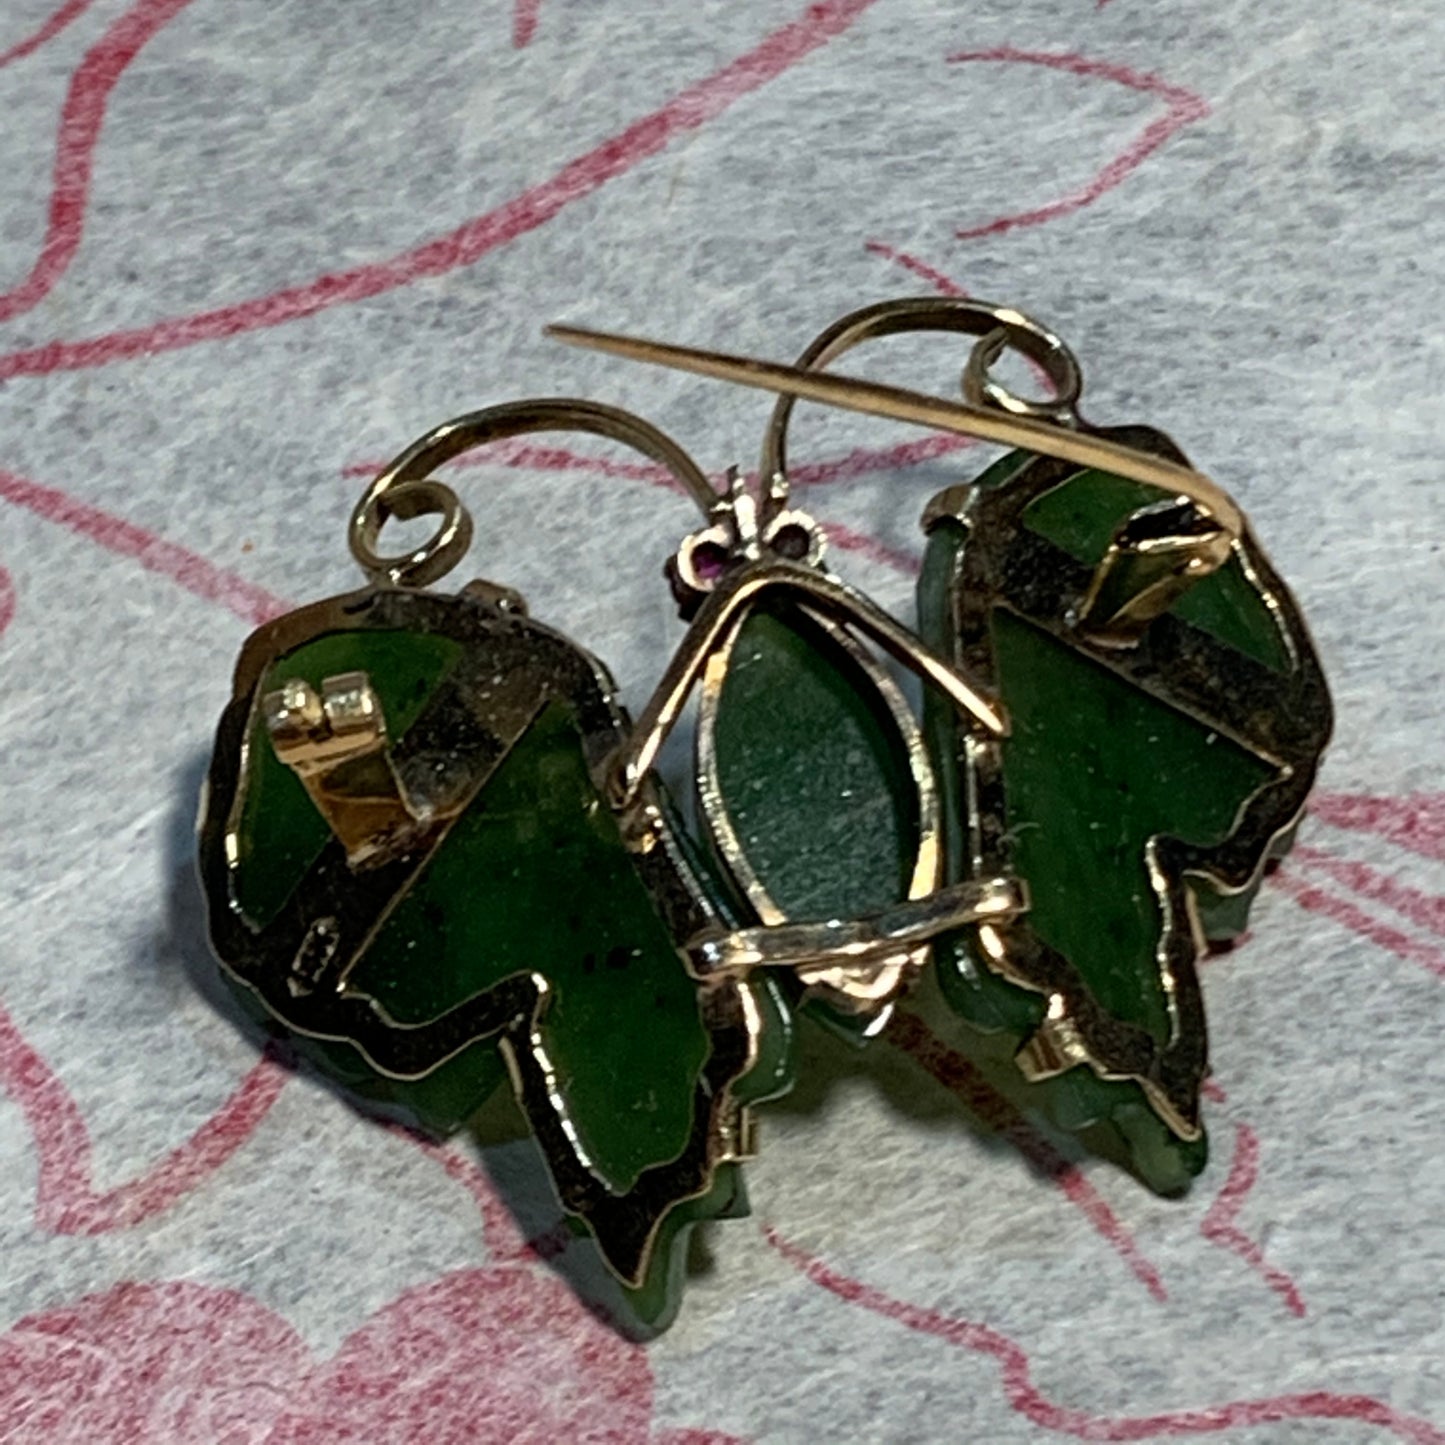 Jade nephrite brooch